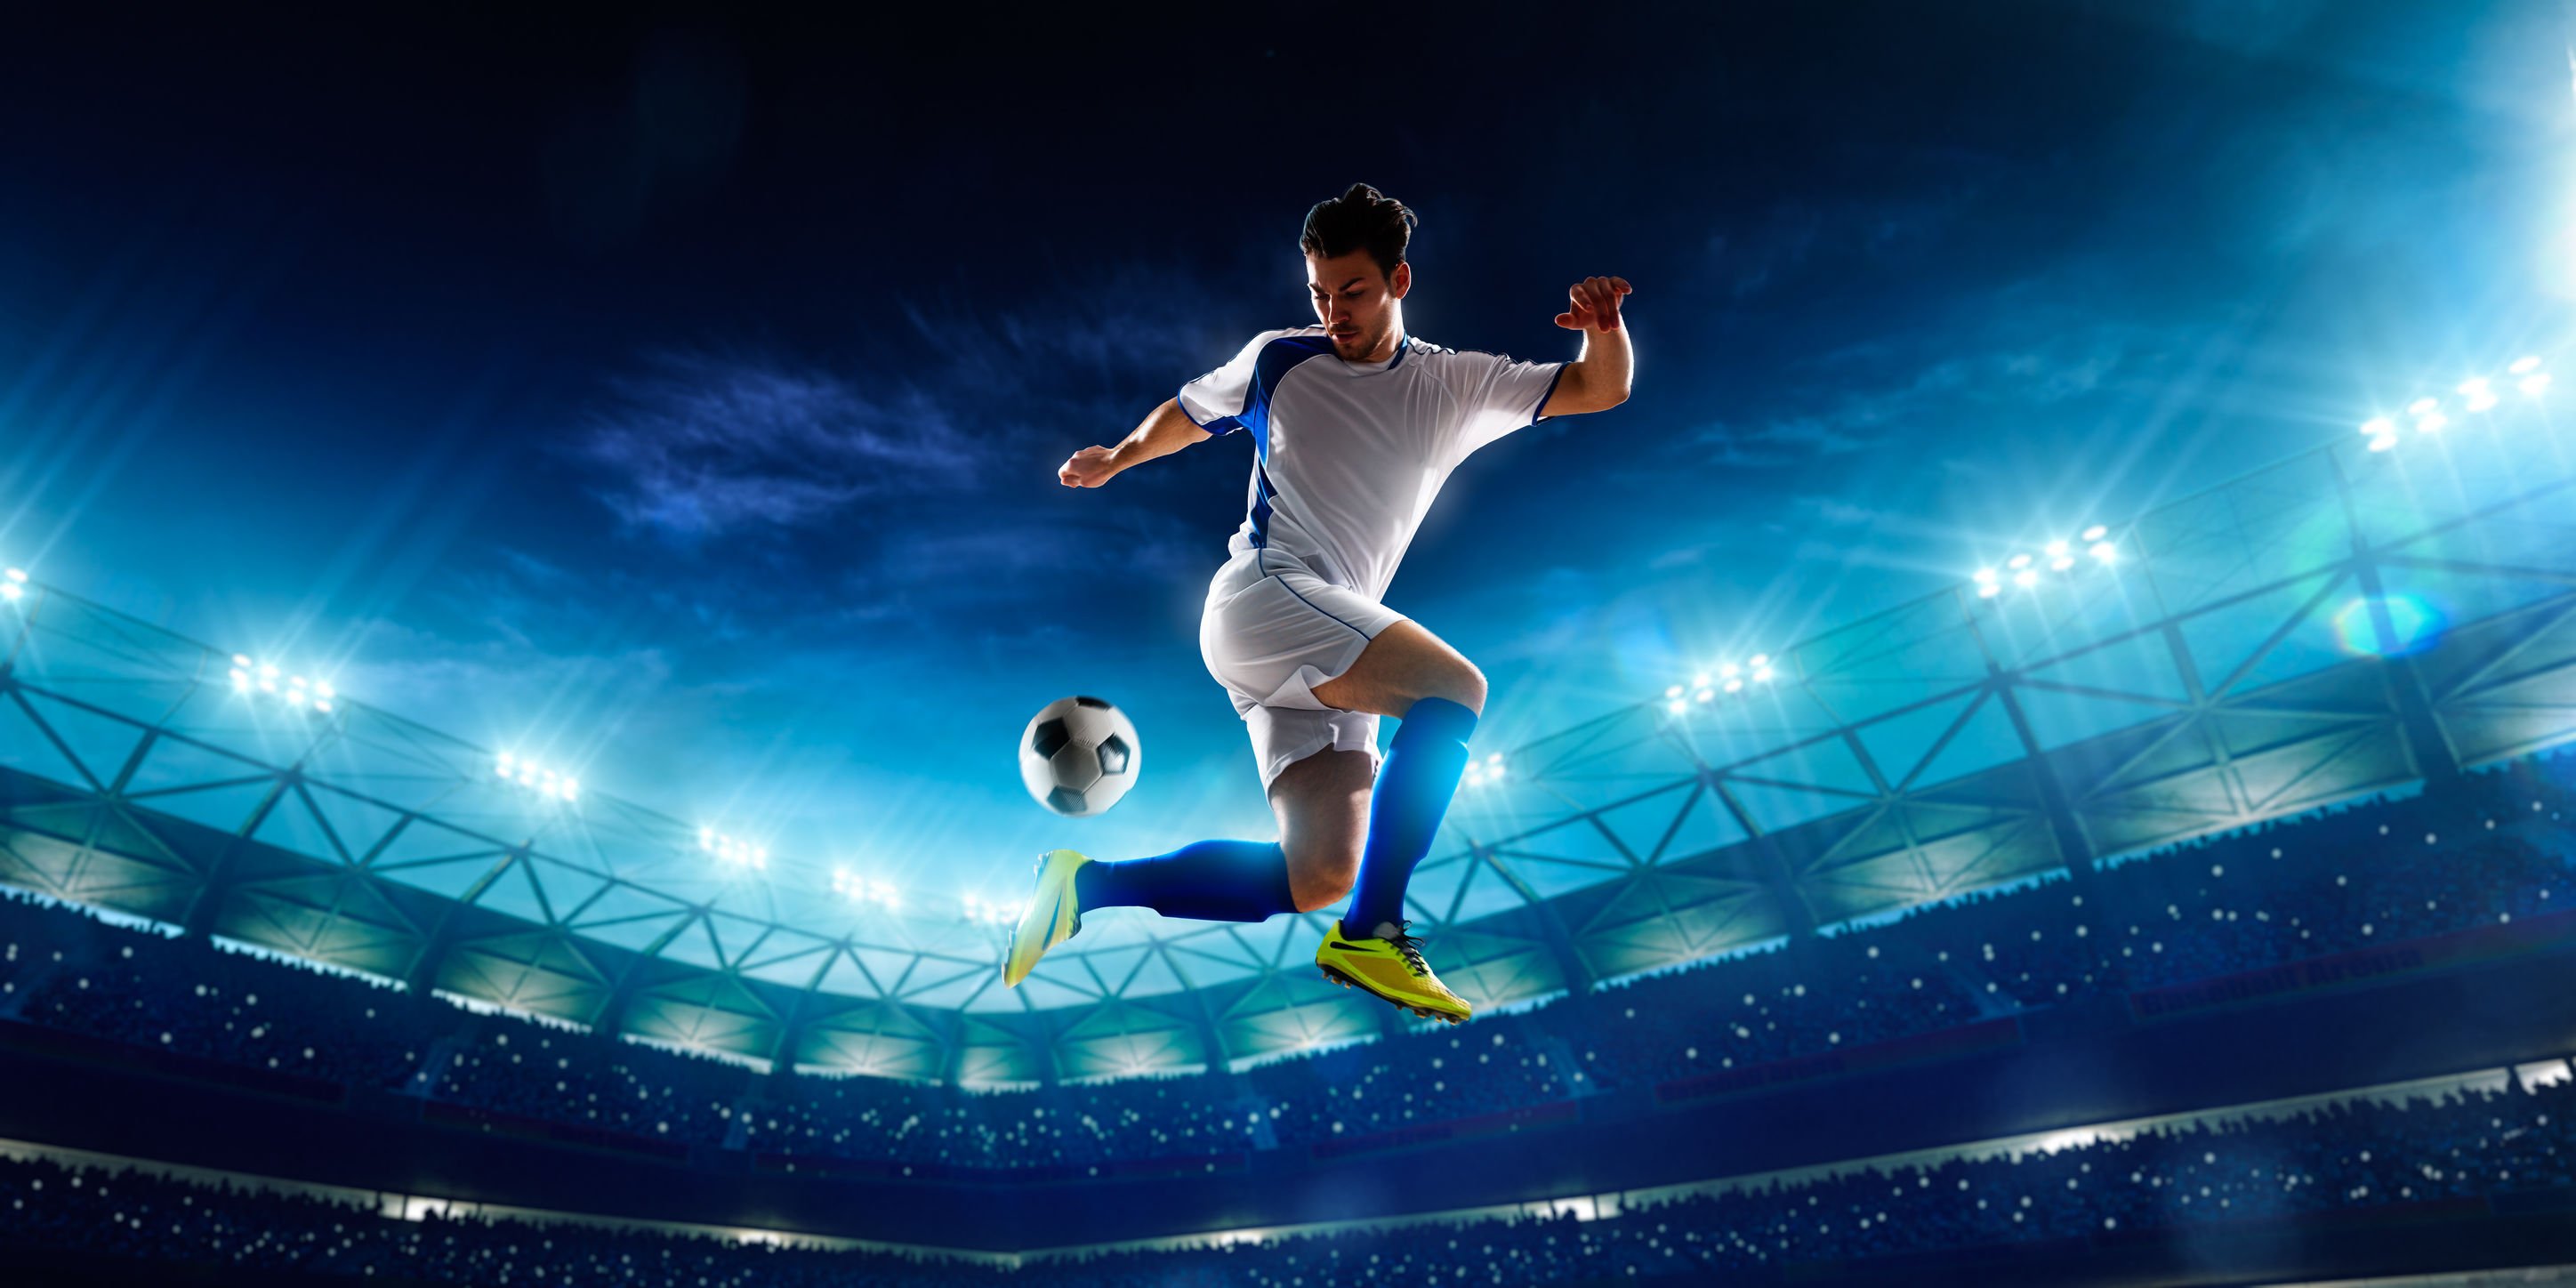 Jogador de futebol driblando bola no ar, e ao fundo a arquibancada do estádio acesa.